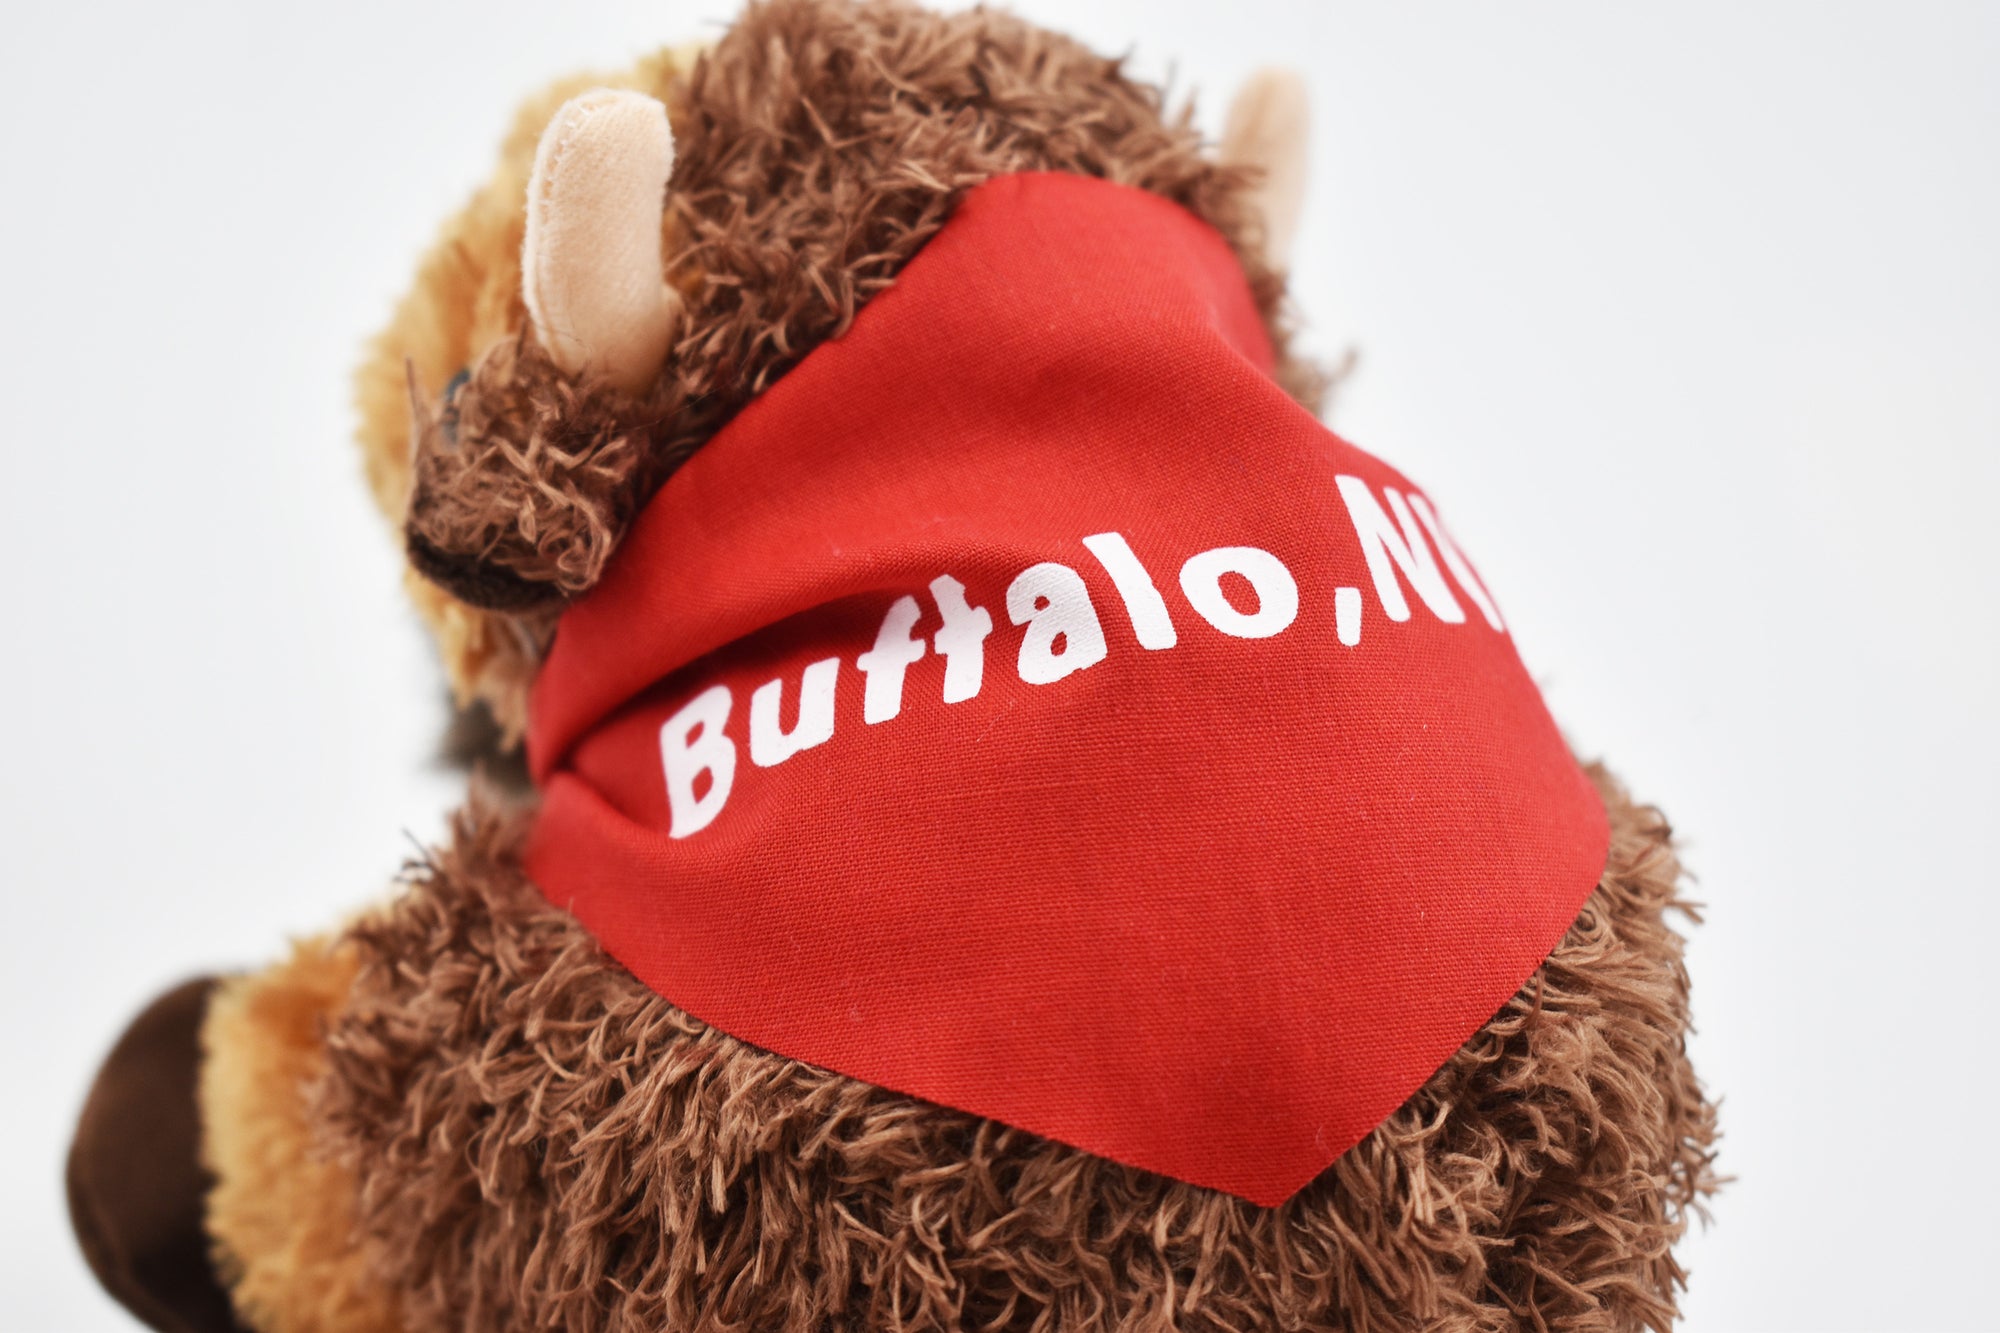 Mini Plush Buffalo with Red Bandana